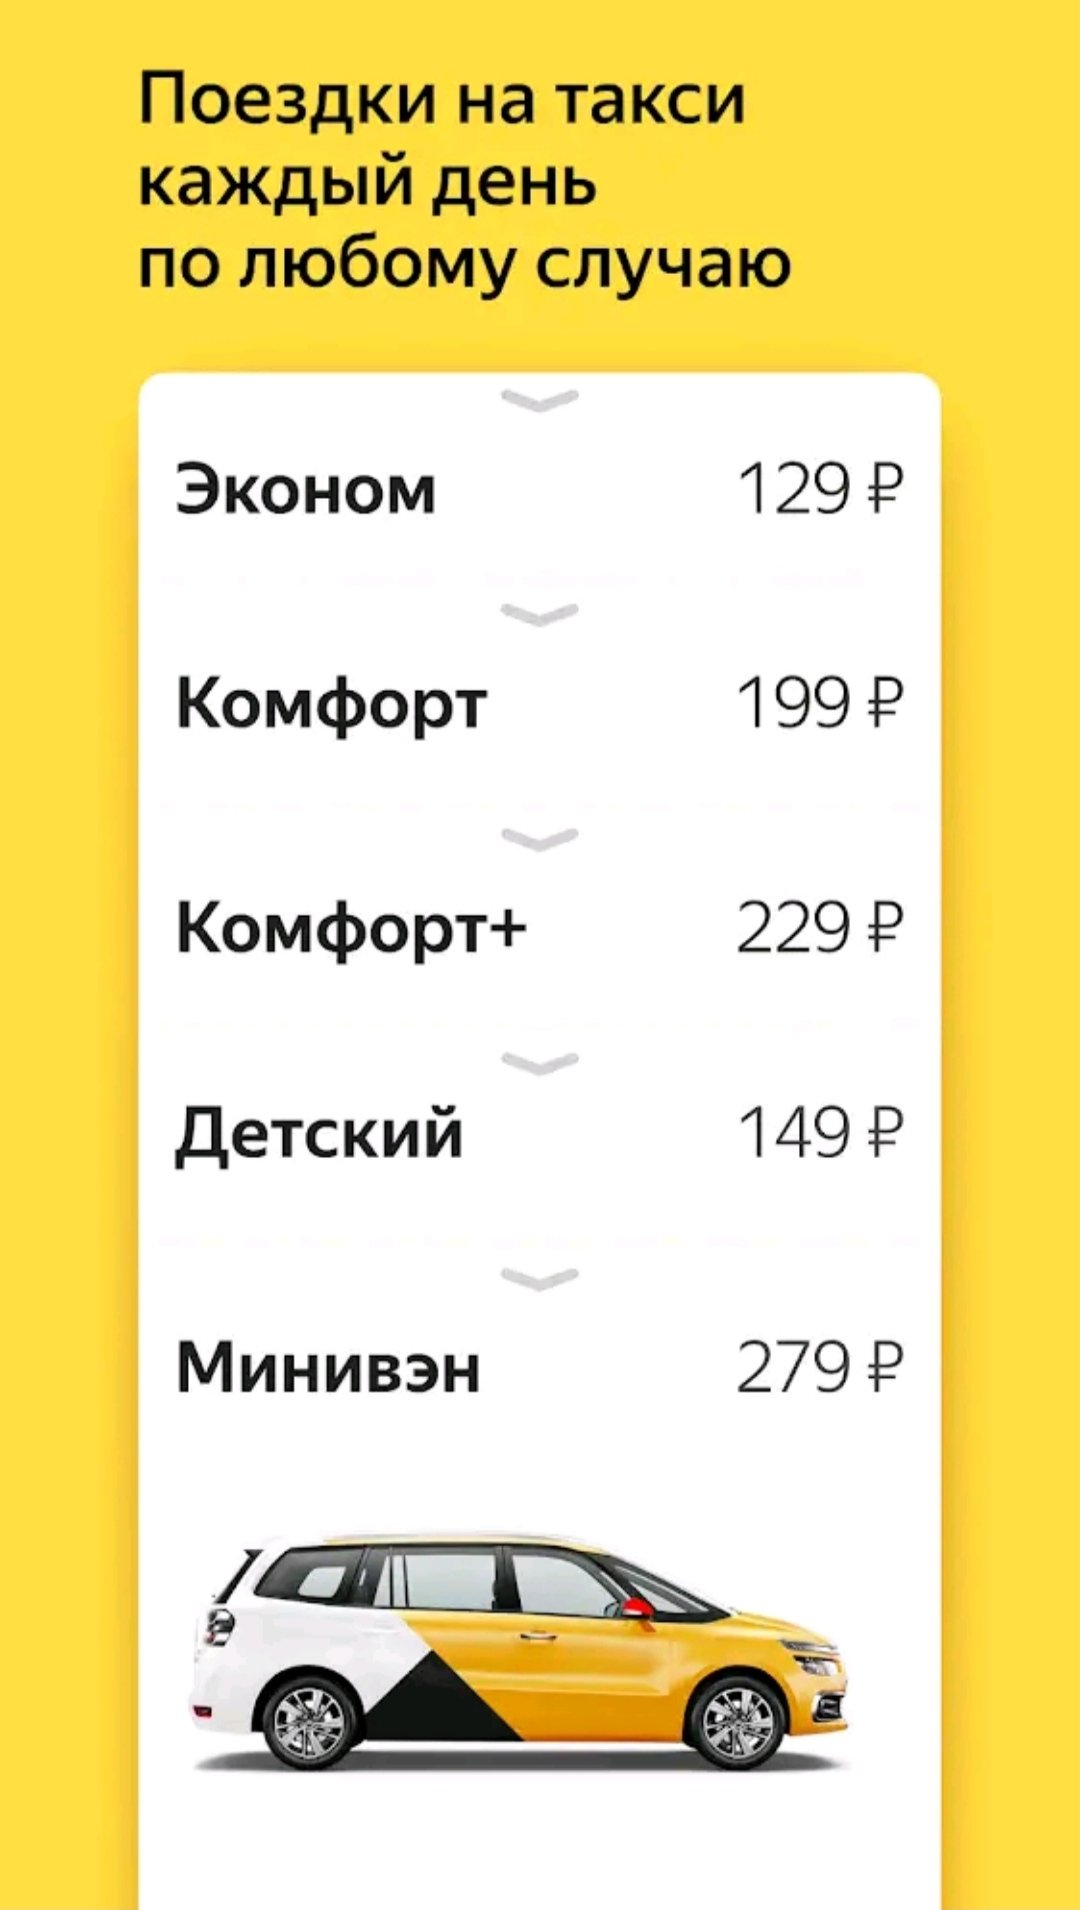 Вызвать такси в москве по телефону эконом